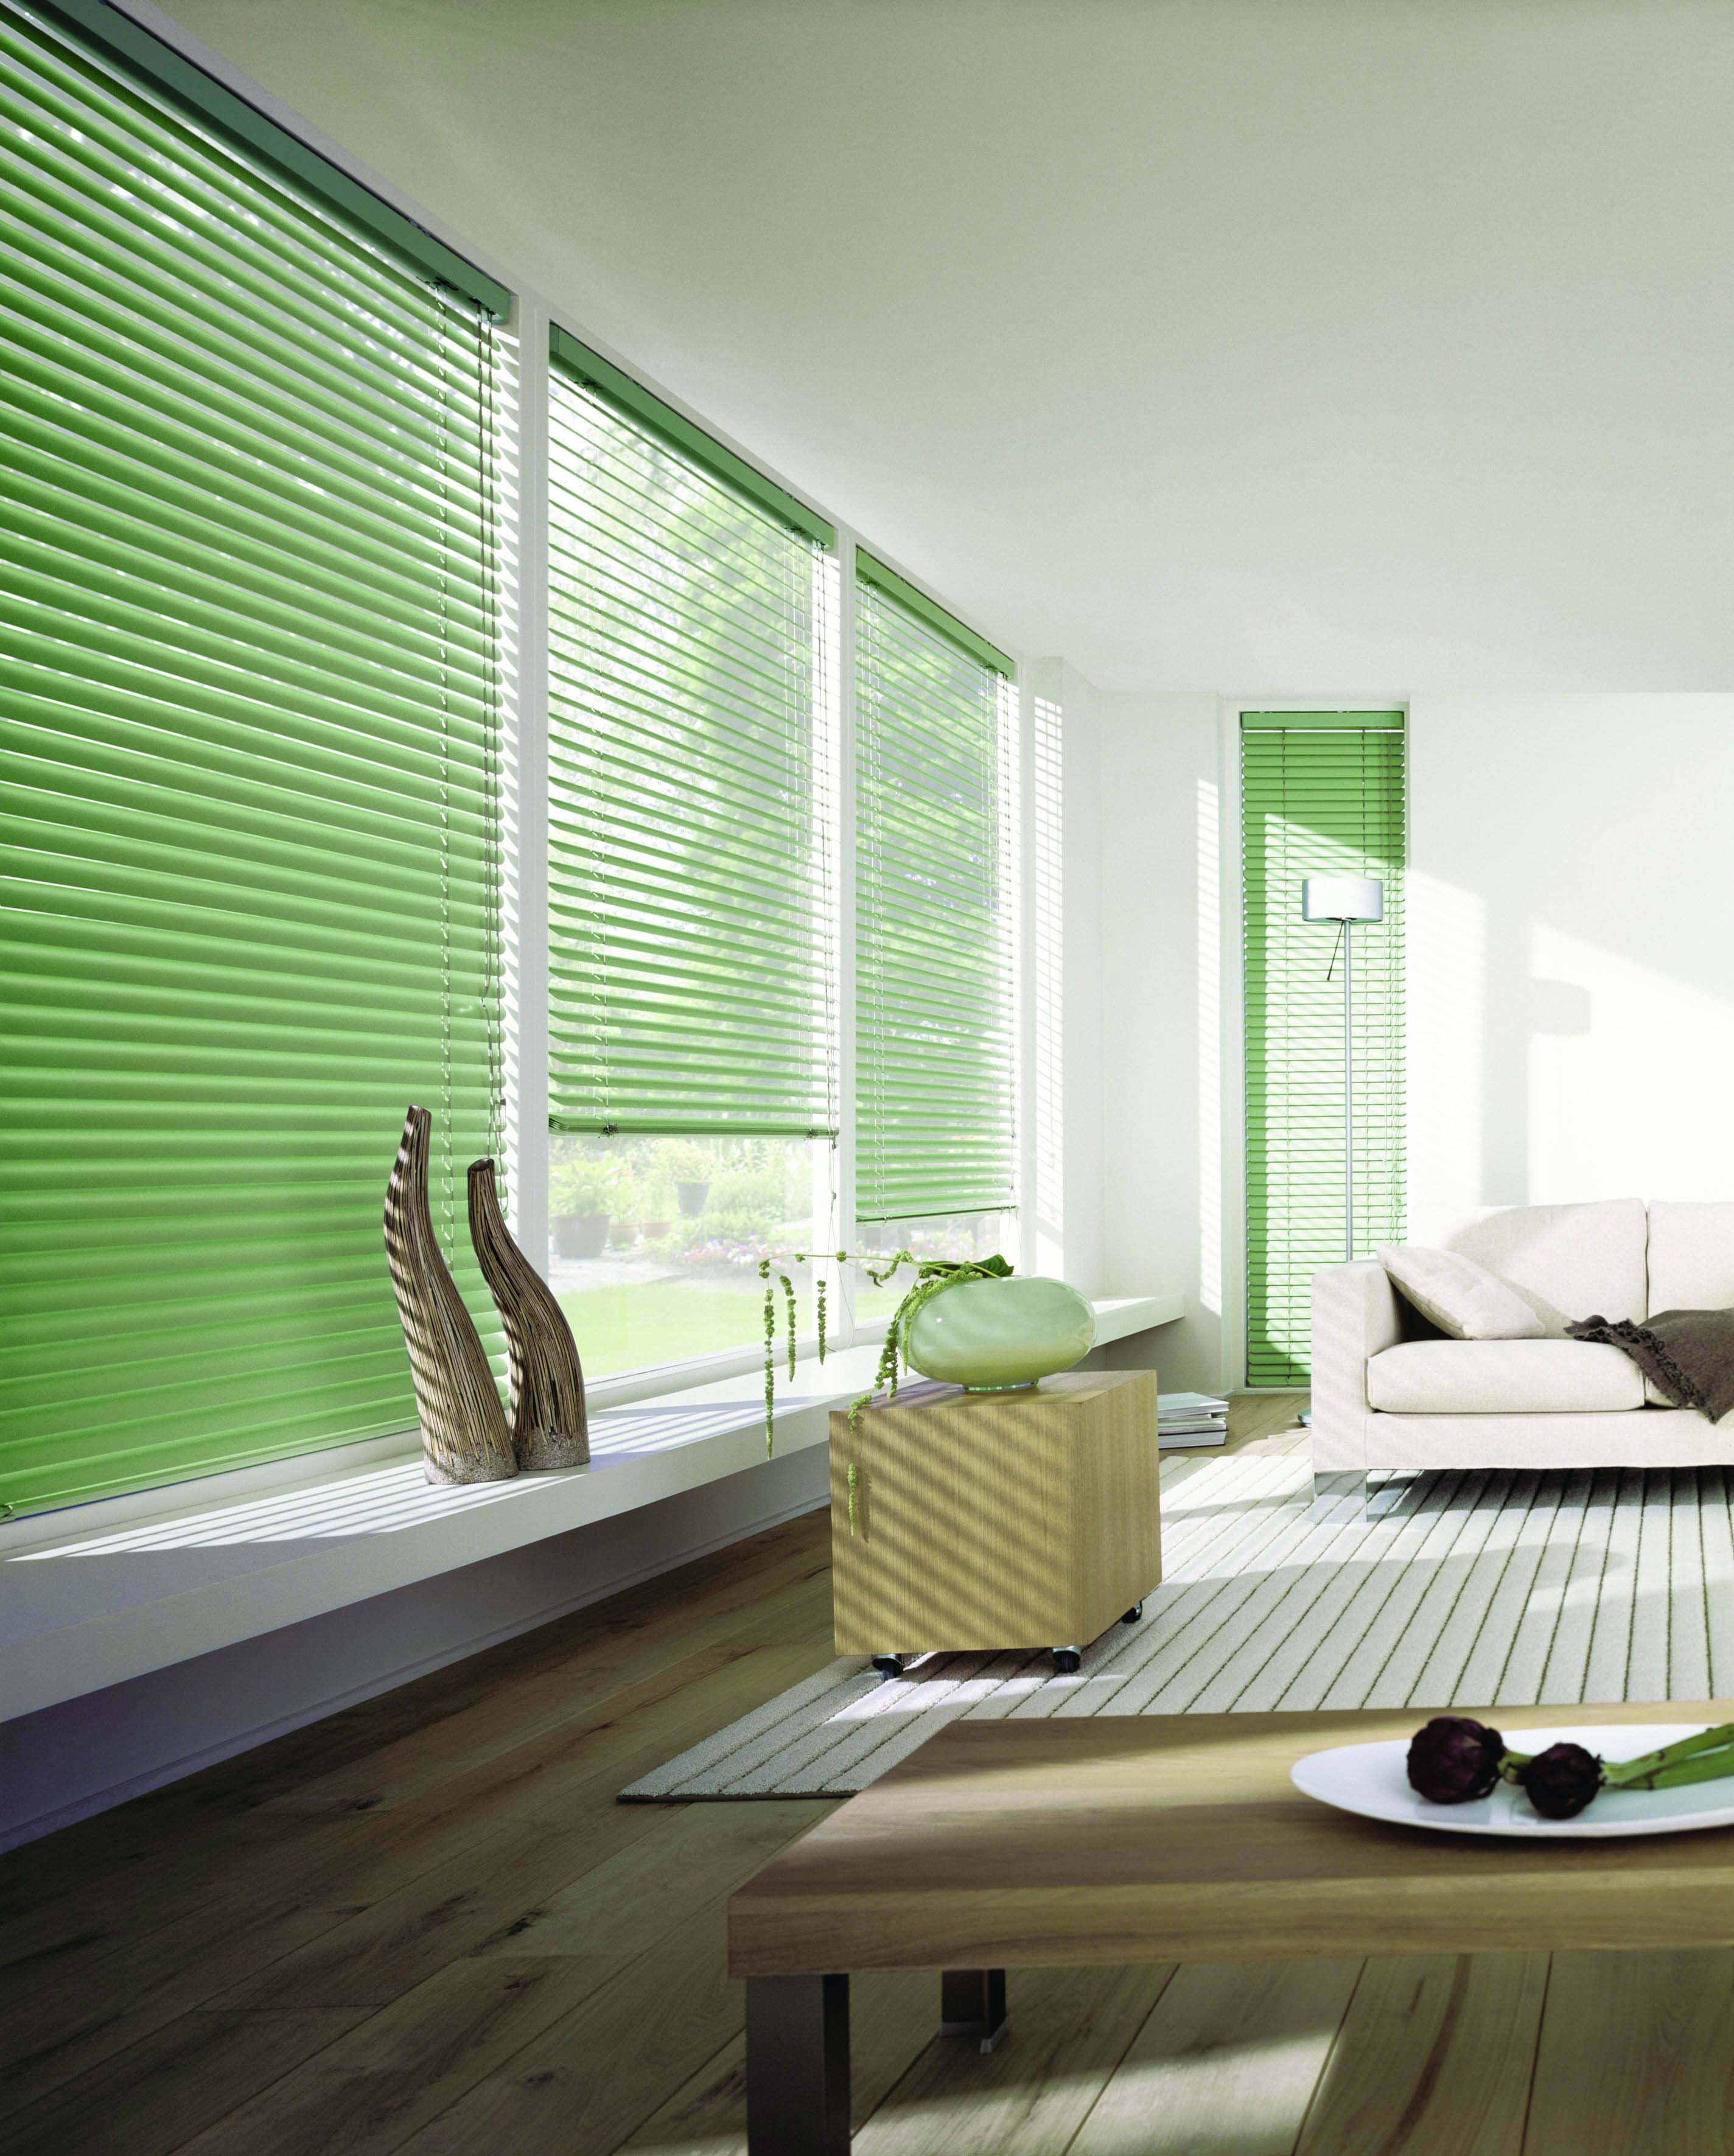 Green aluminium Venetian blinds